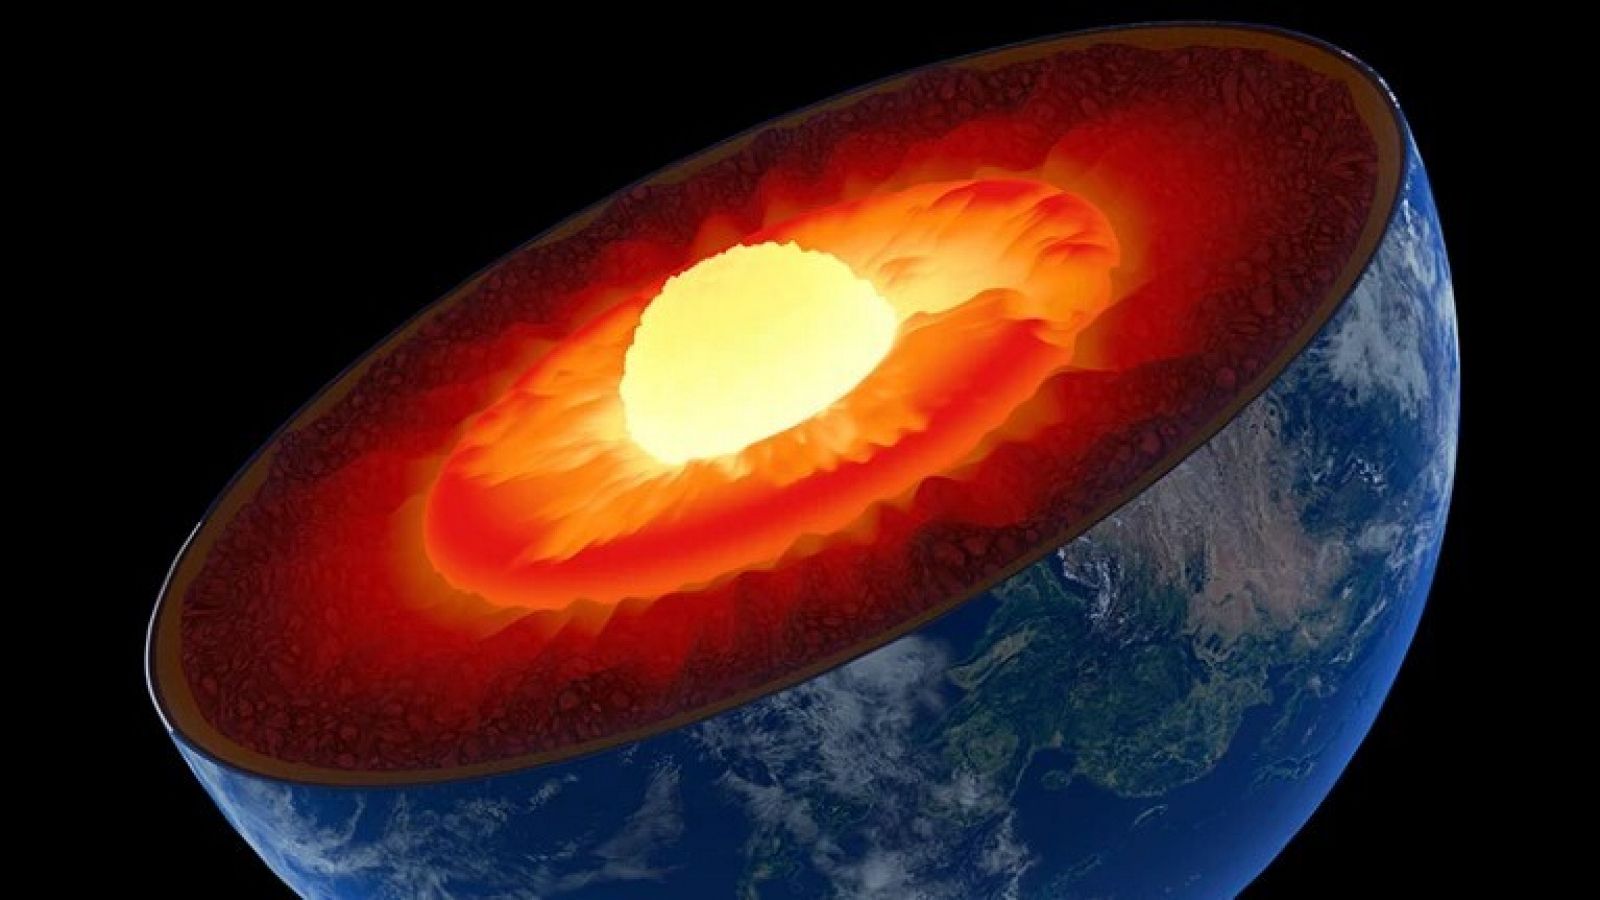 El núcleo interno de la Tierra está formado mayoritariamente por hierro sólido